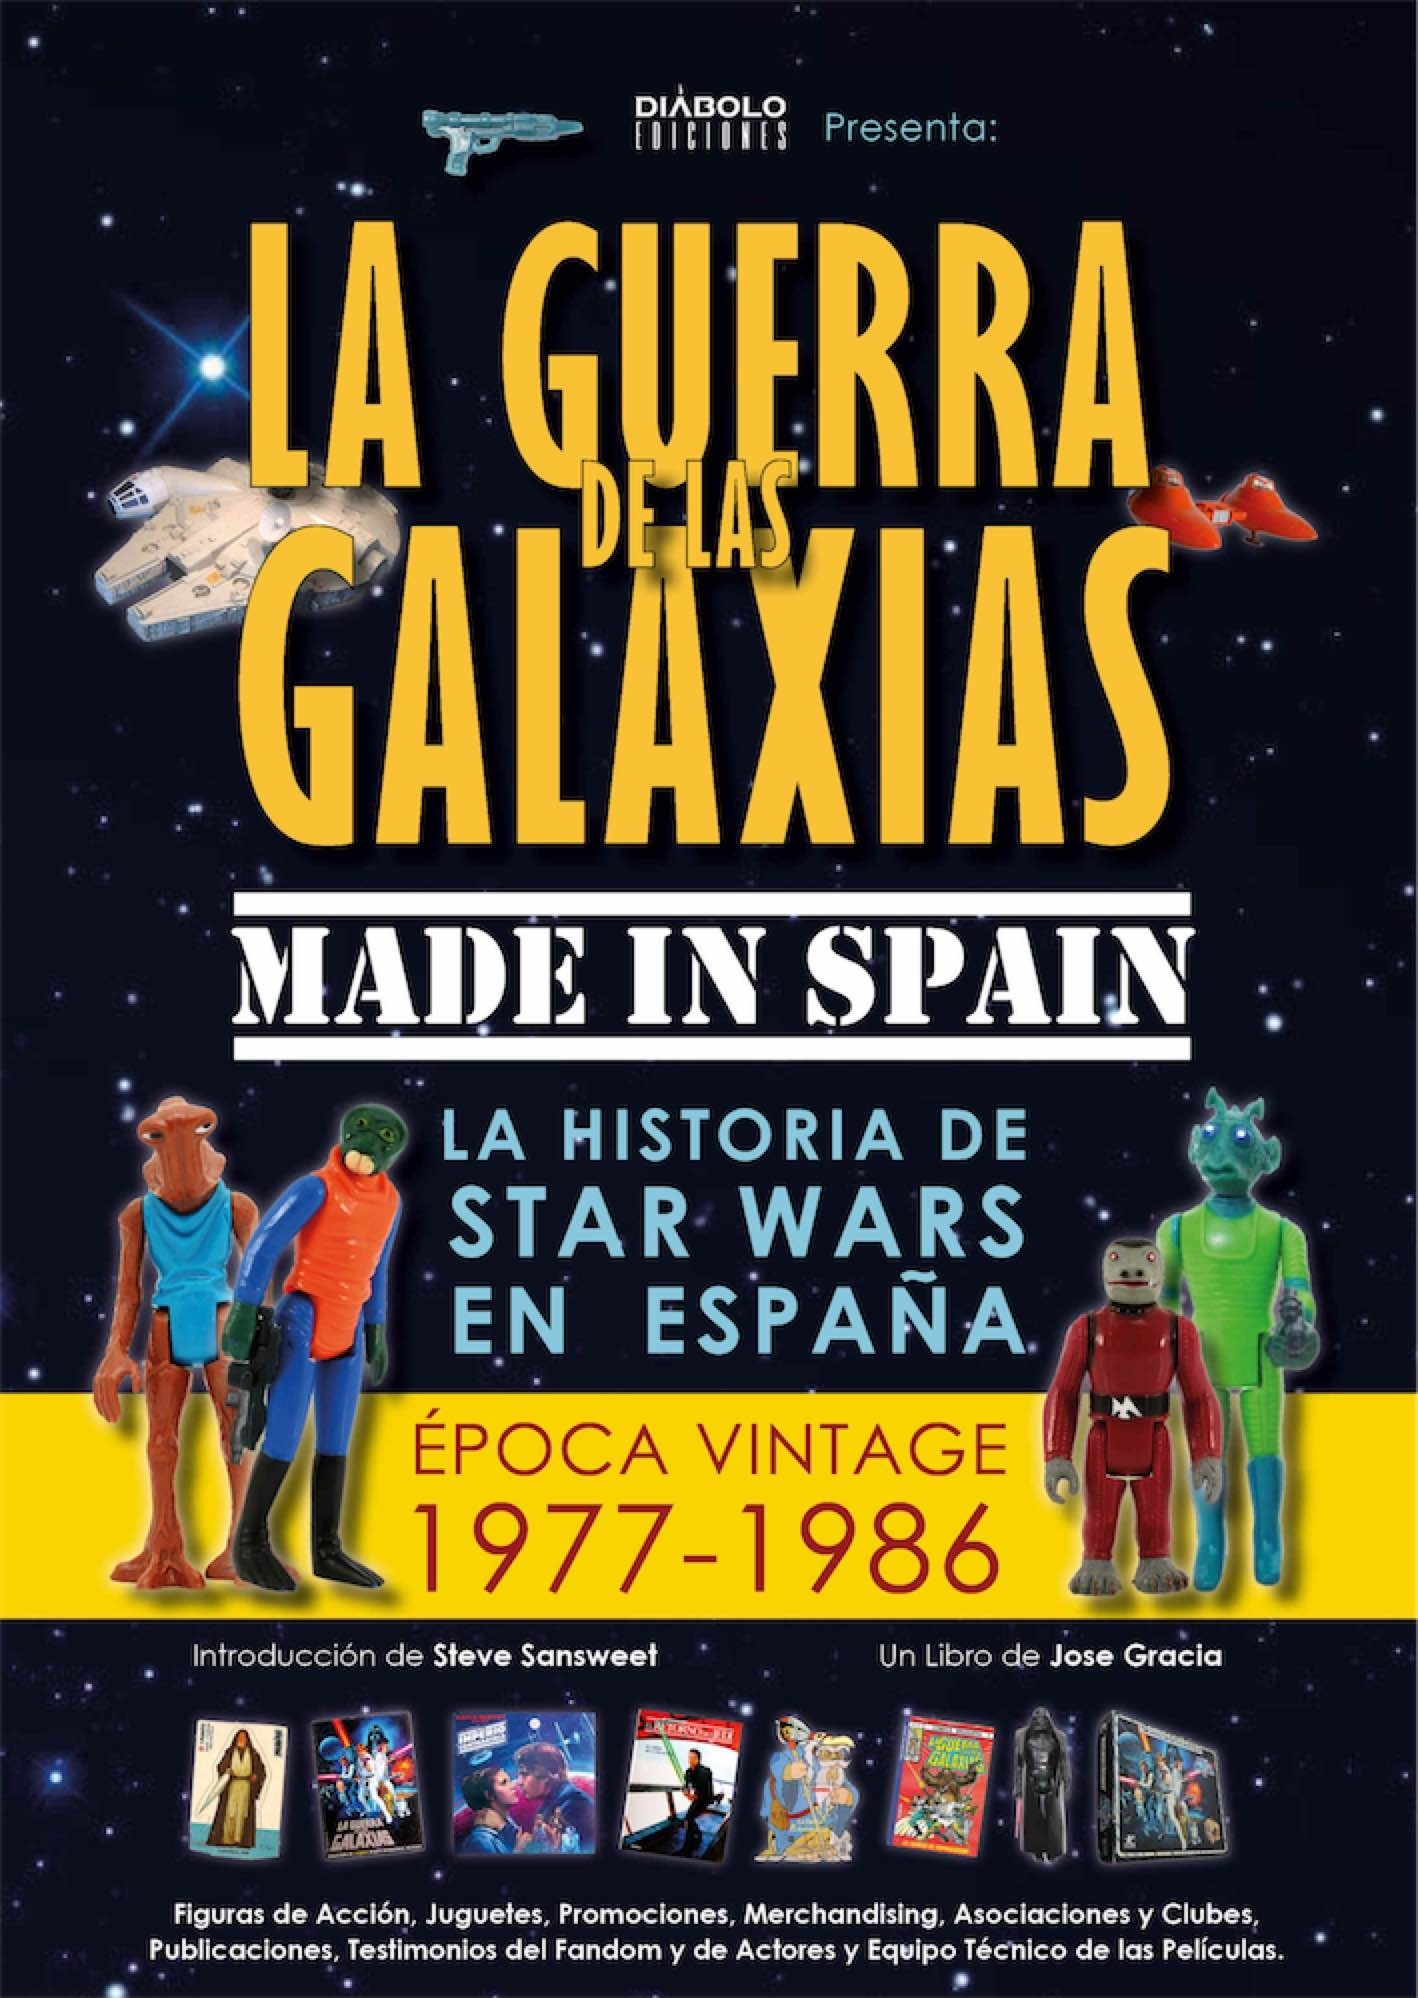 Guerra de las galaxias Made in Spain, La "La historia de Star Wars en España (Época Vintage, 1977-1986)"